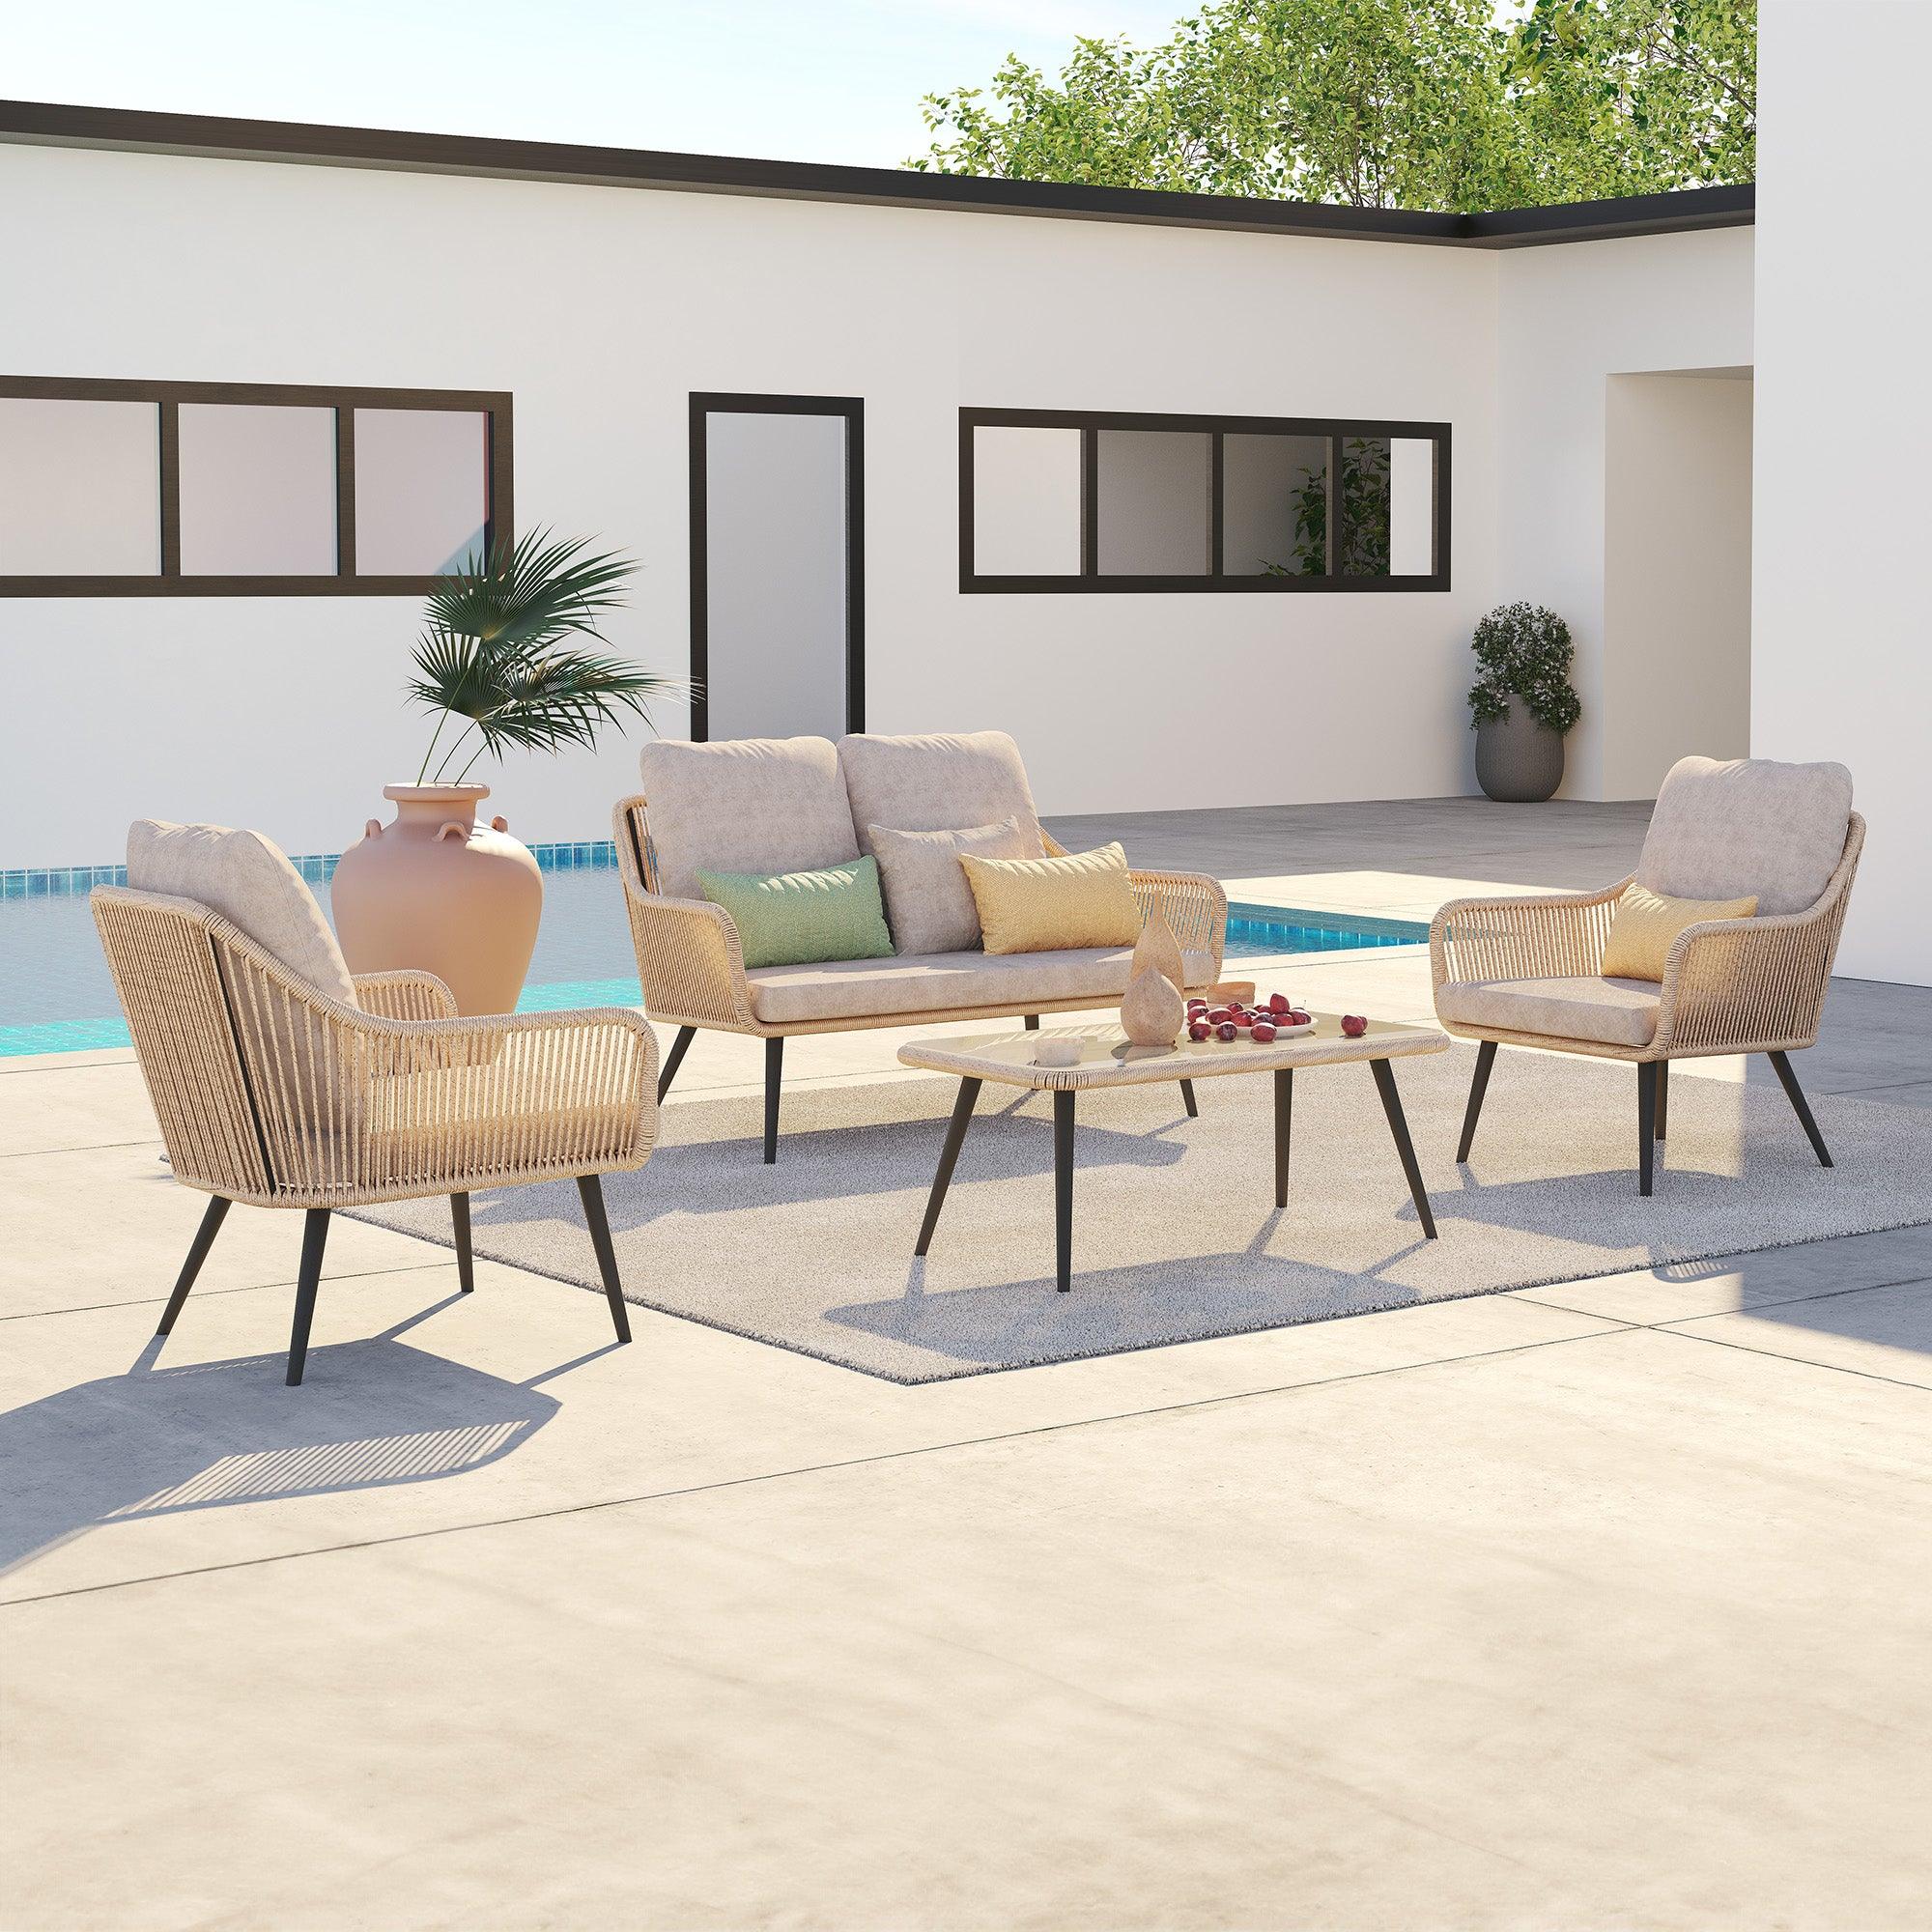 Conversation Design with 4 Patio Set Aluminum Jardina | Grey Rope Seat